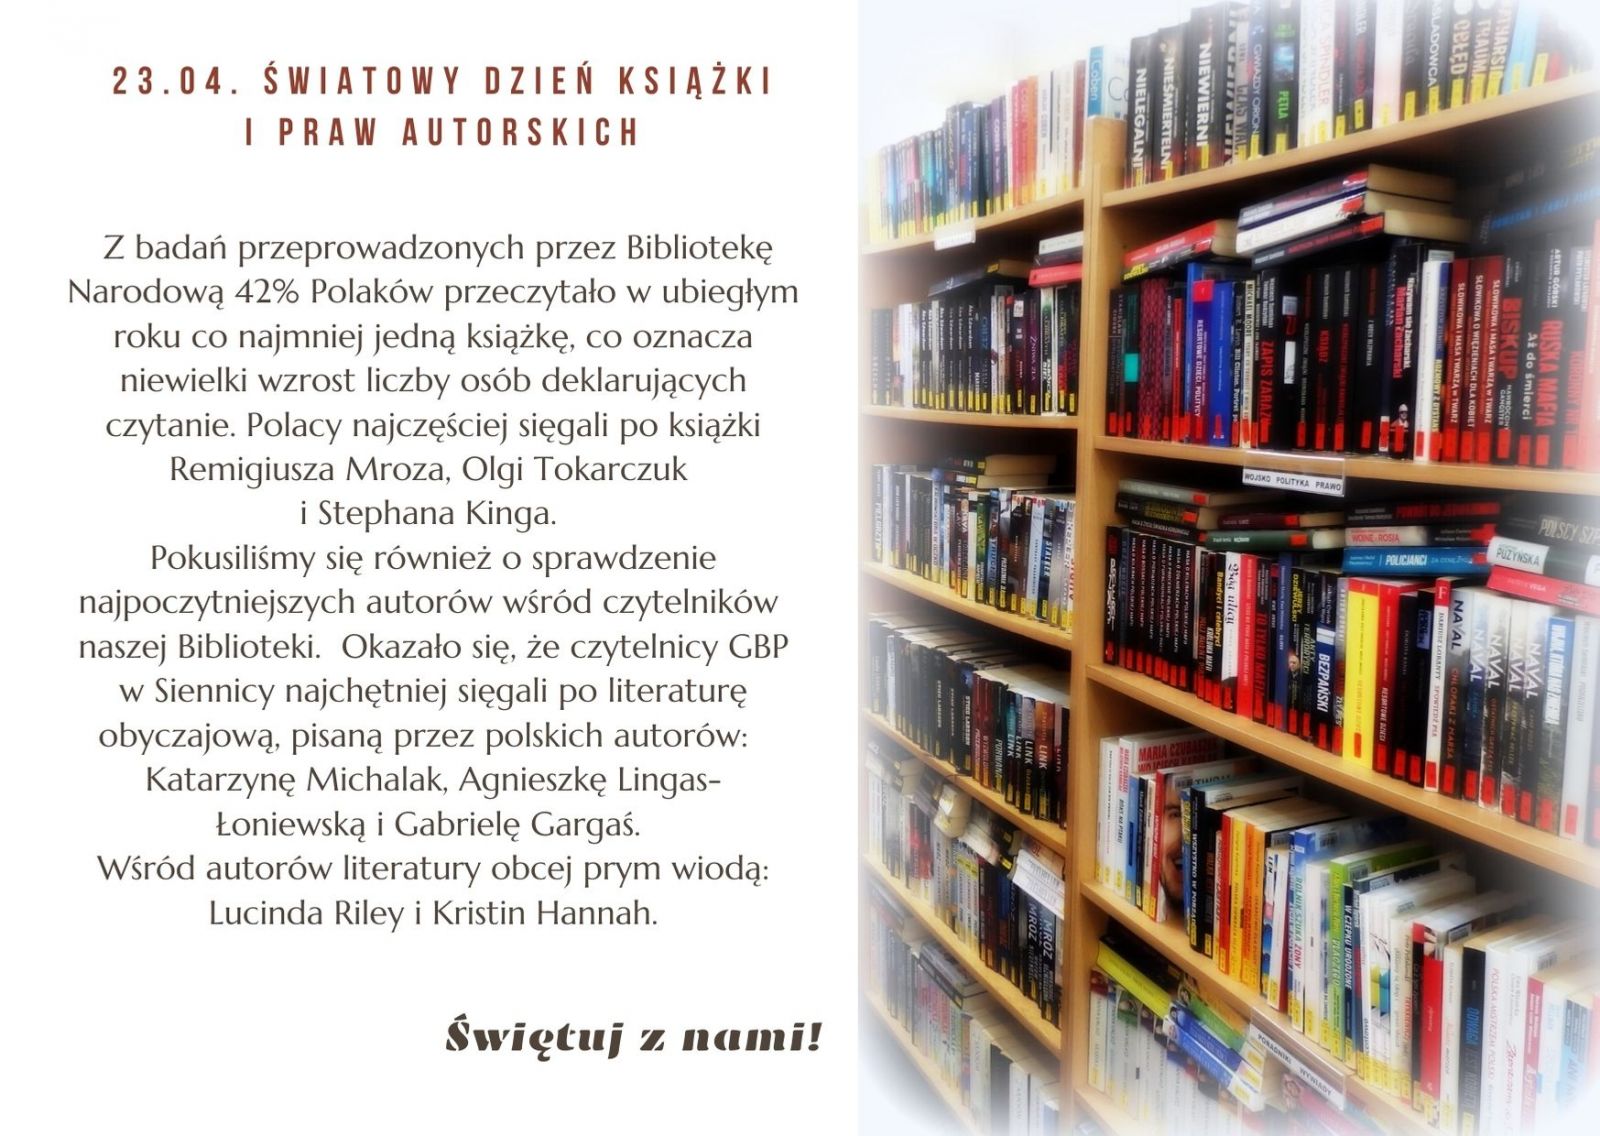 23 kwietnia Światowy Dzień Książki i Praw Autorskich. Z prawej strony księgozbiór biblioteki.